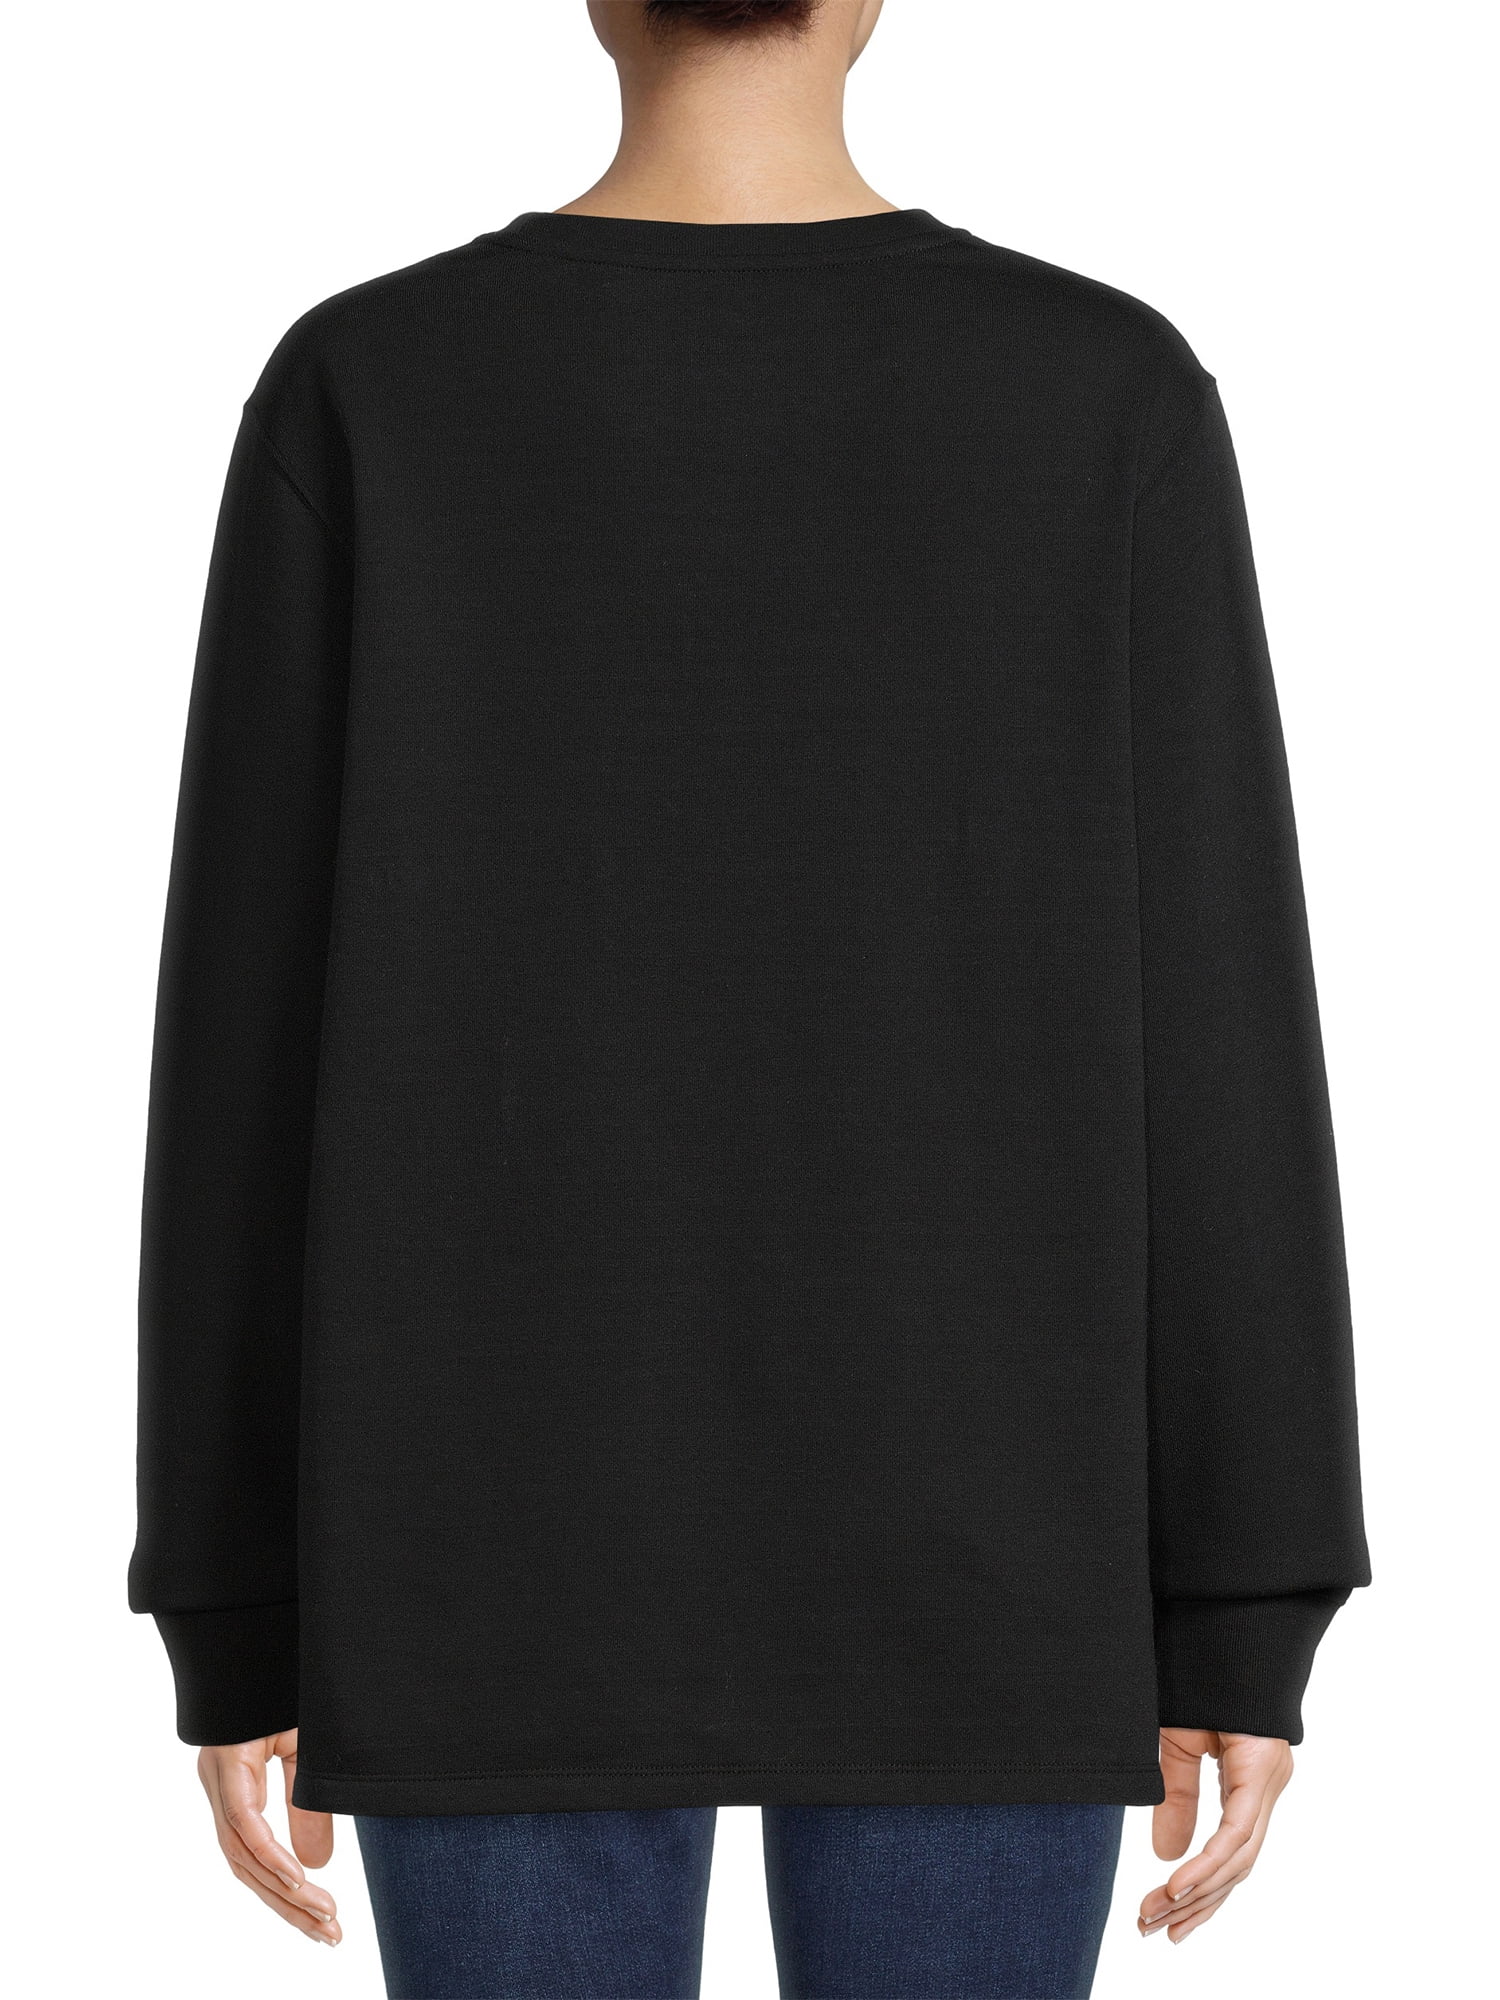 Positivitees Women's Burnout Graphic Fleece Sweatshirt 